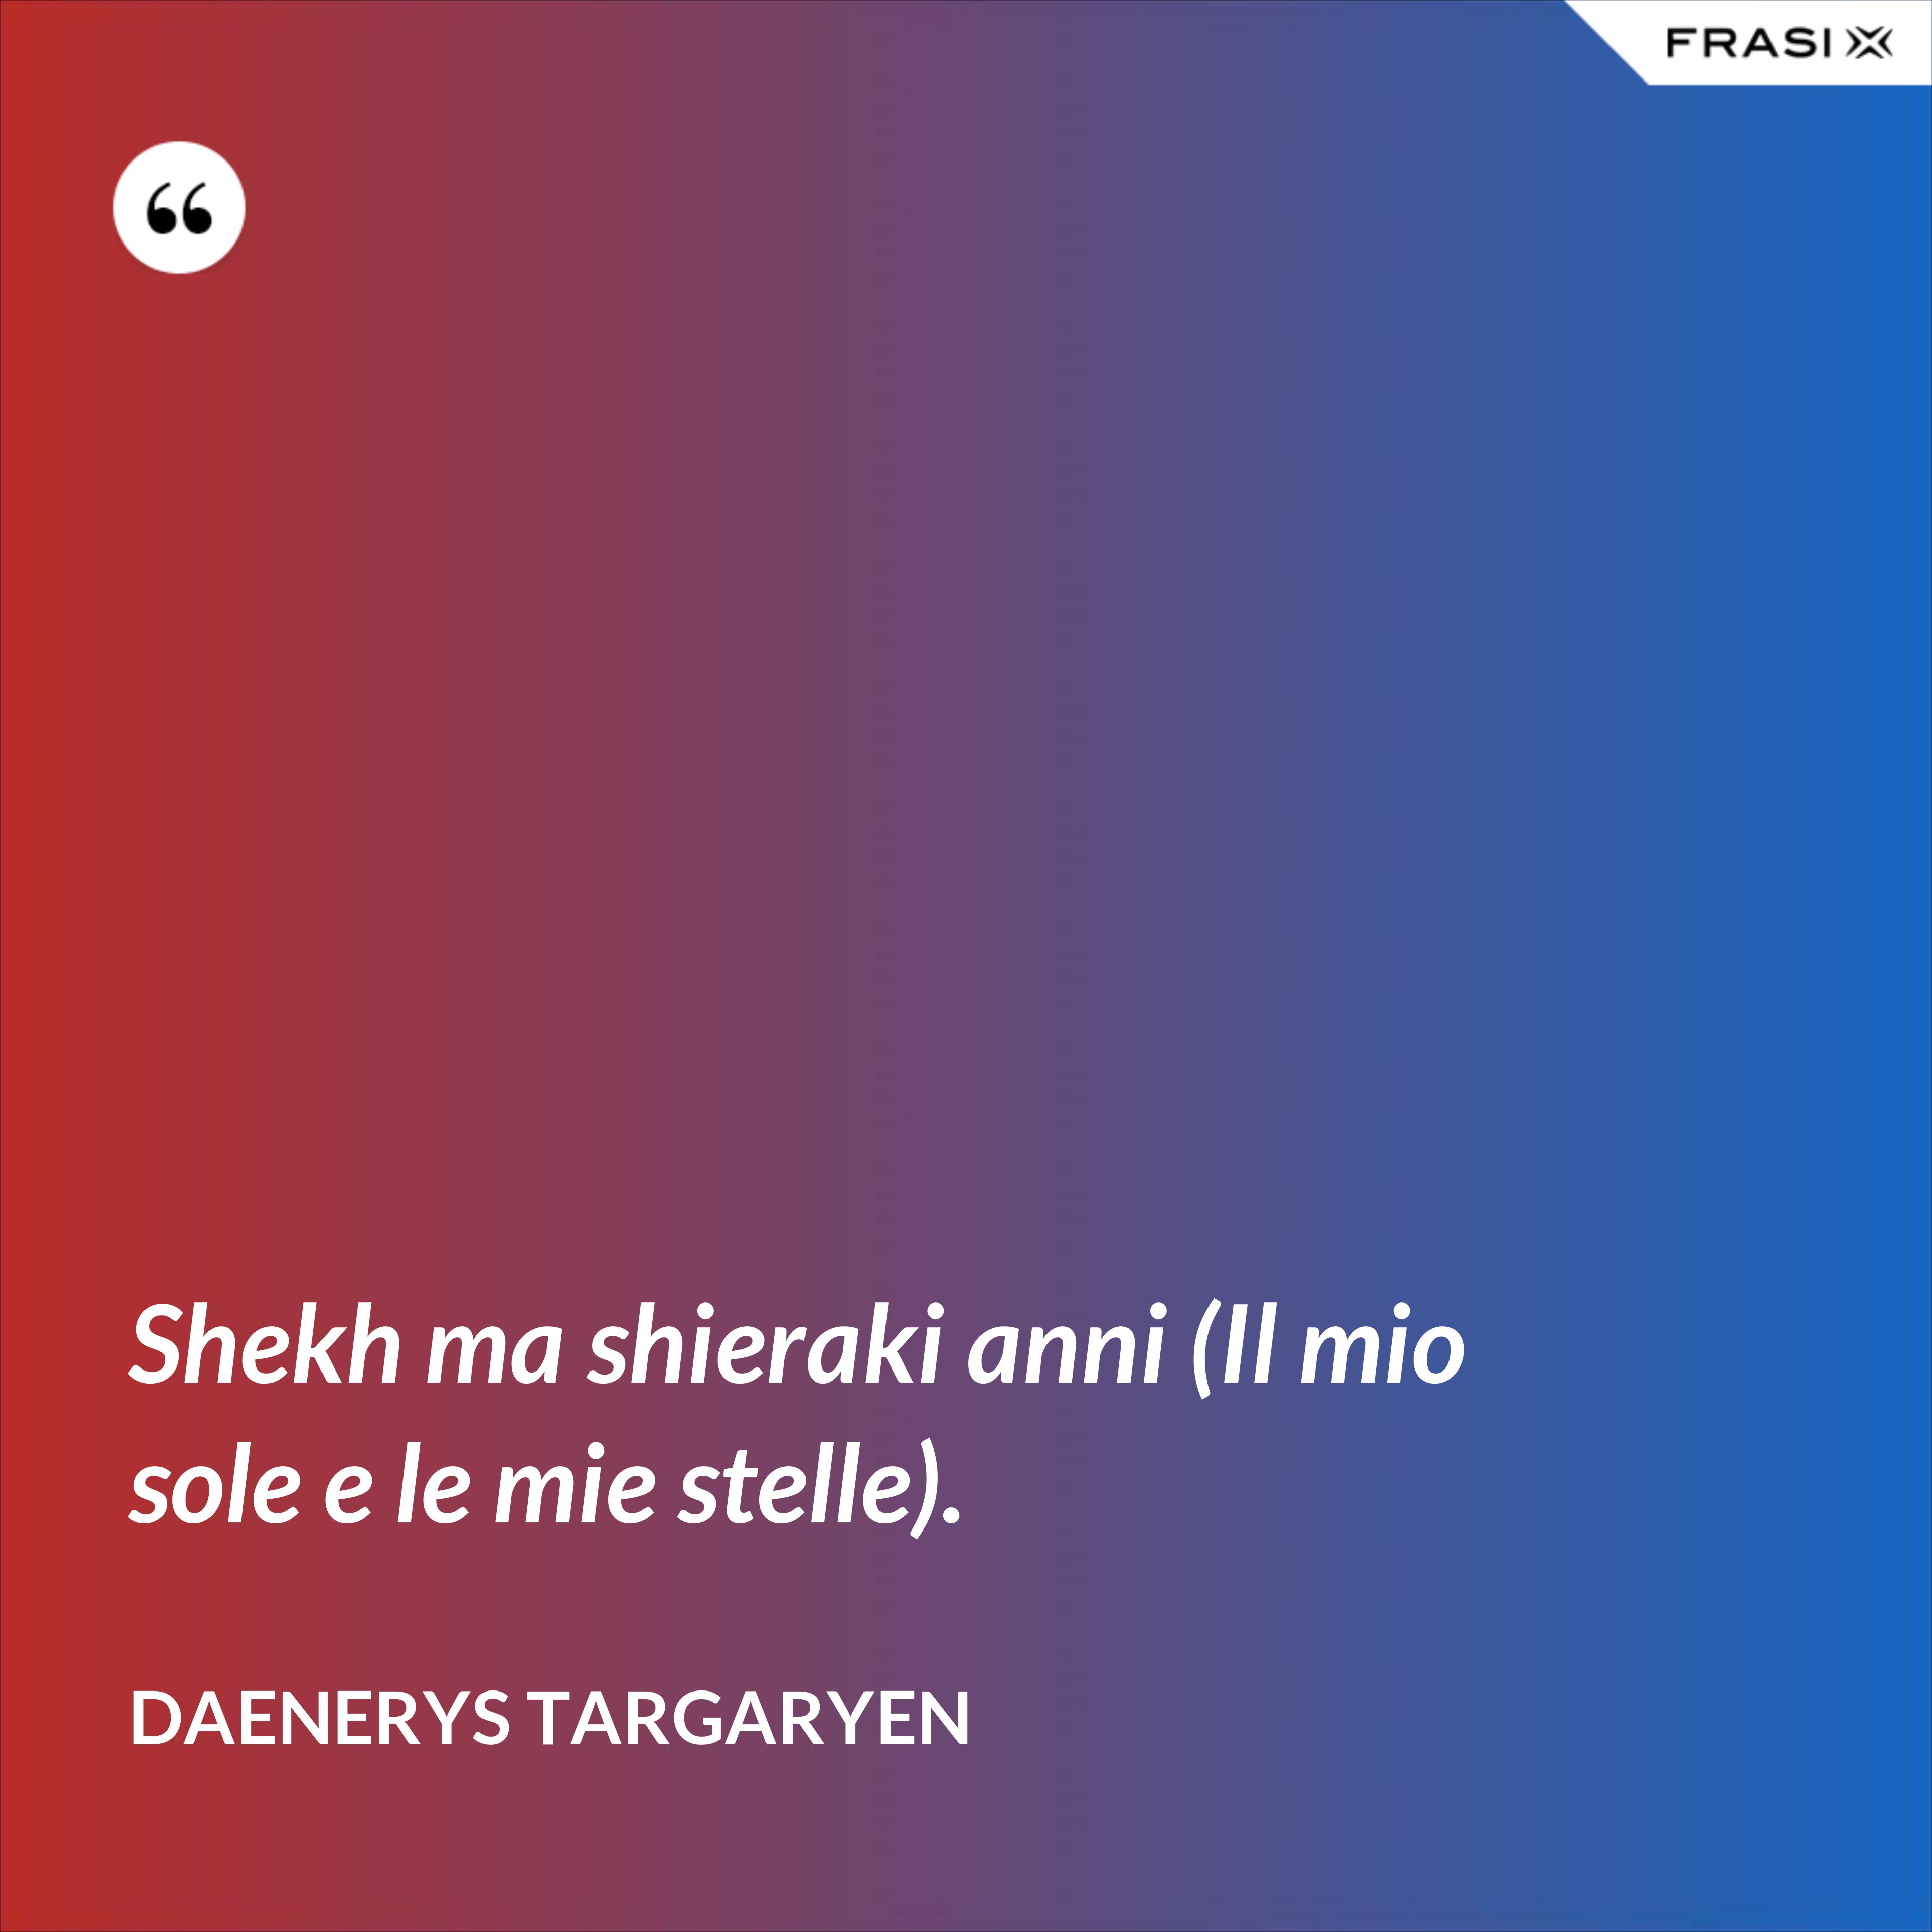 Shekh ma shieraki anni (Il mio sole e le mie stelle). - Daenerys Targaryen